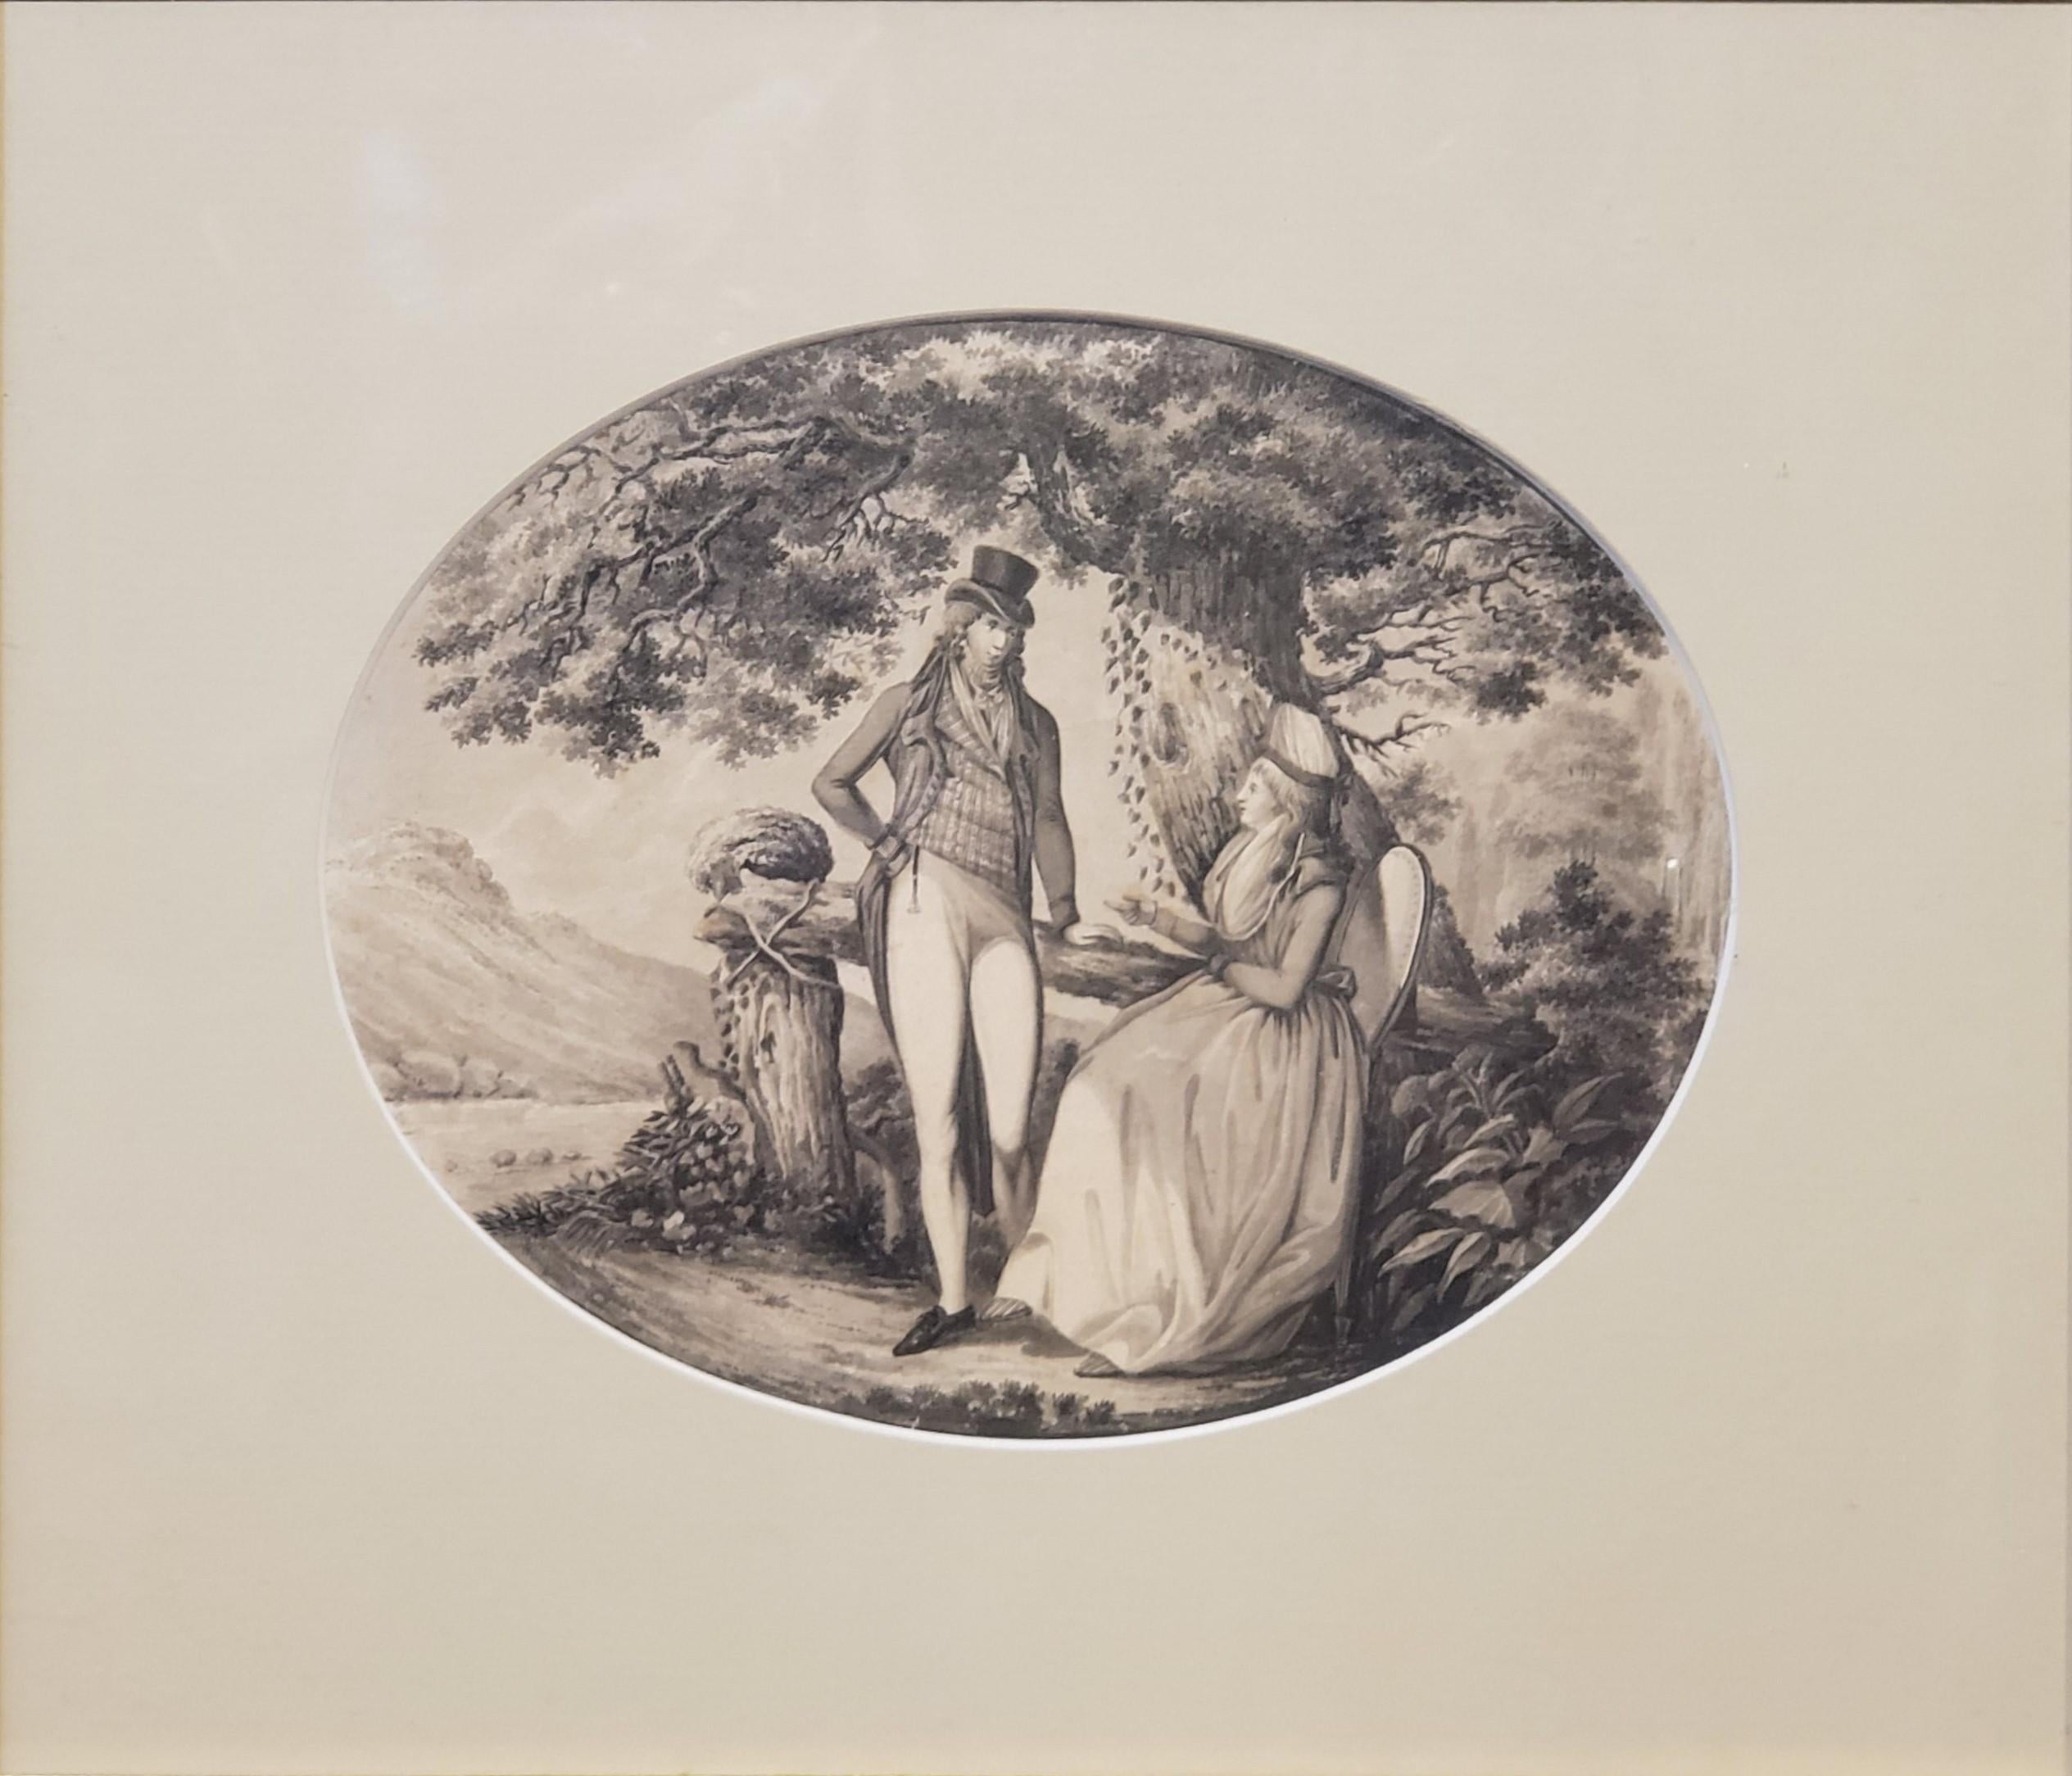 Tuschezeichnung eines Mannes, der eine Frau gegenübersteht, signiert von B. Koller, datiert 1796 – Art von B Koller